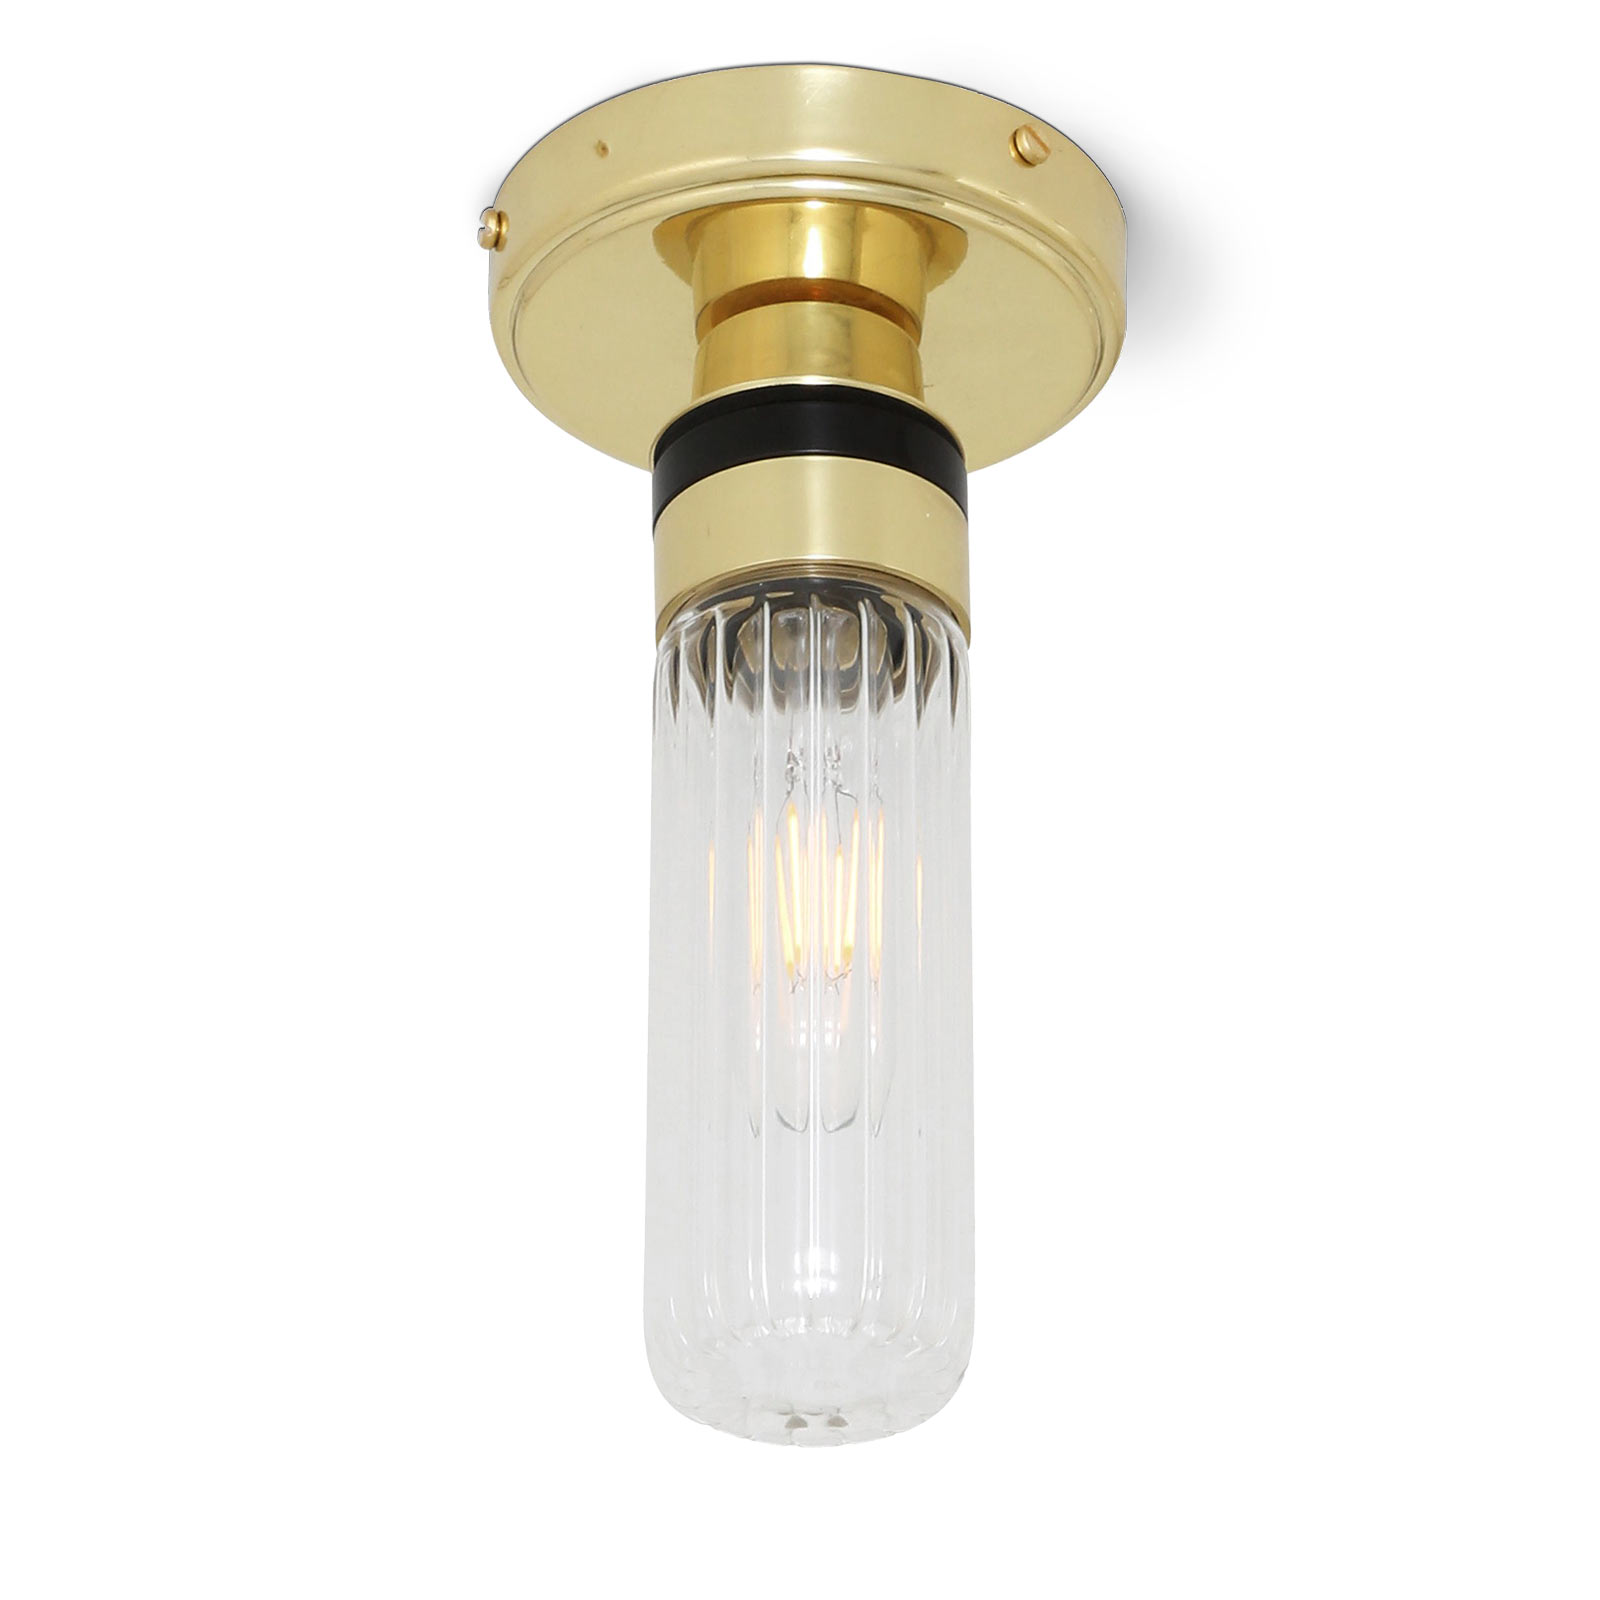 Bad-Deckenlampe mit kleinem Glas-Zylinder (klar oder prismatisch), IP65